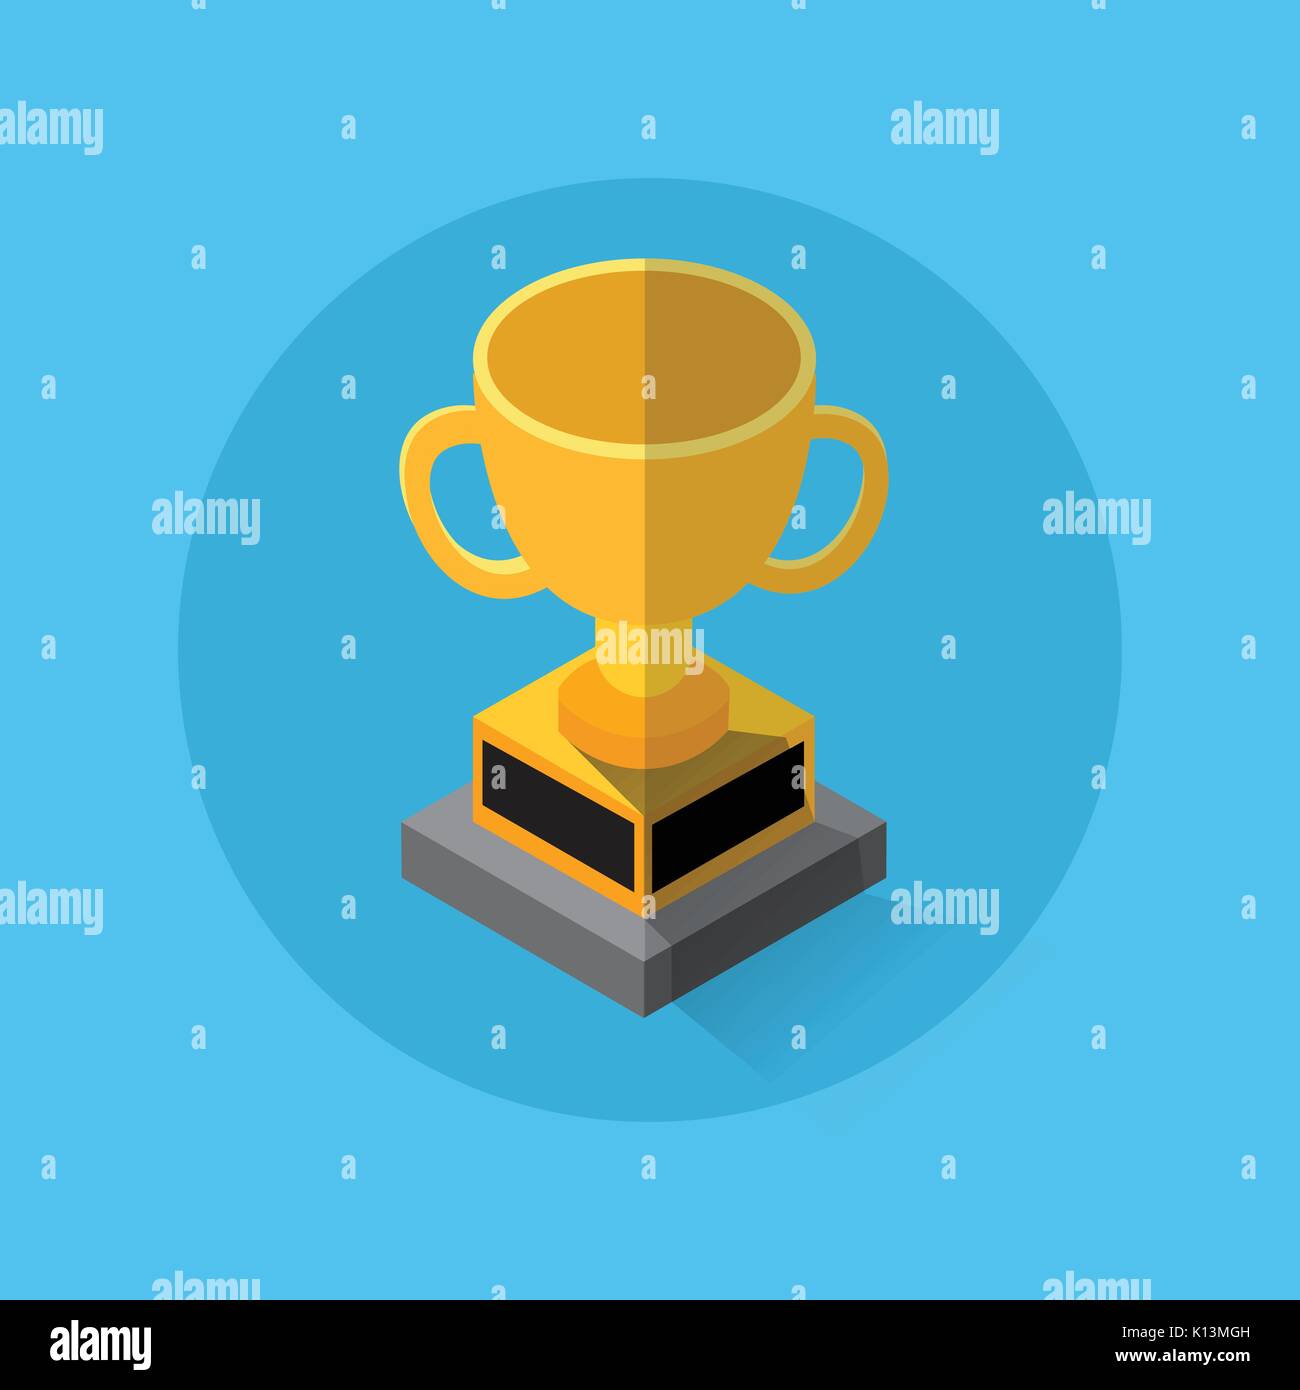 Goldene Trophäe Cup. flachbild Grafikdesign - Vector Illustration. Qualitätskonzept für Werbebanner, Web- und mobile Anwendungen, Infografiken. Vektor Symbol Stock Vektor